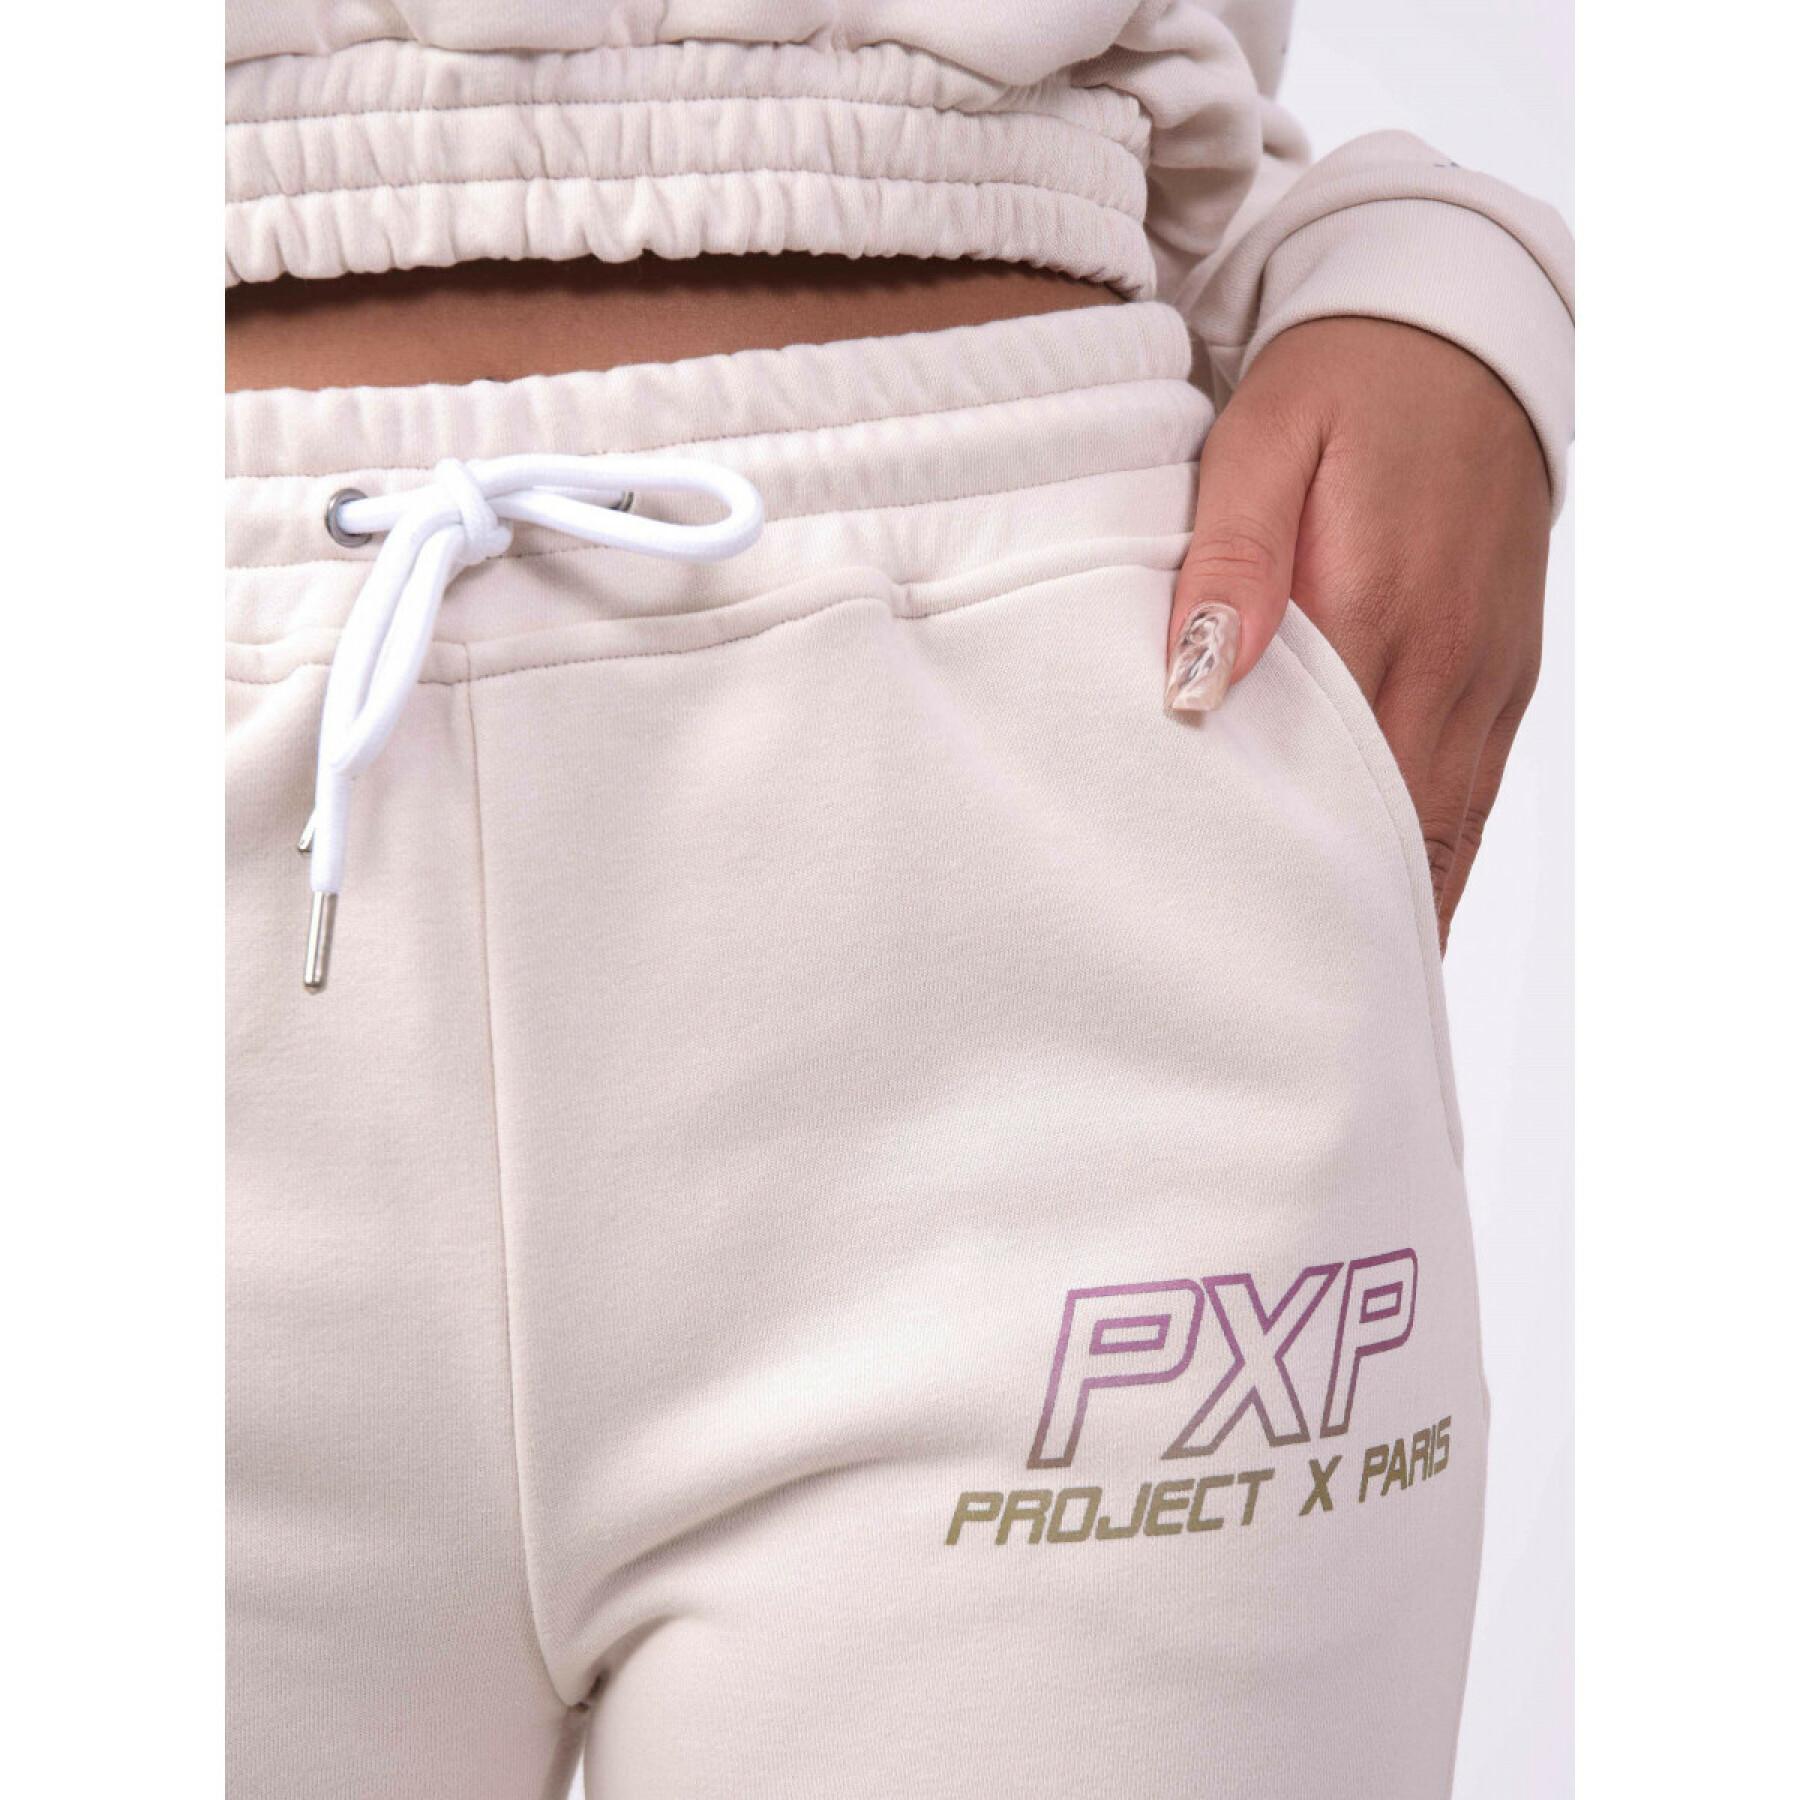 Damski kombinezon joggingowy z opalizującym logo Project X Paris